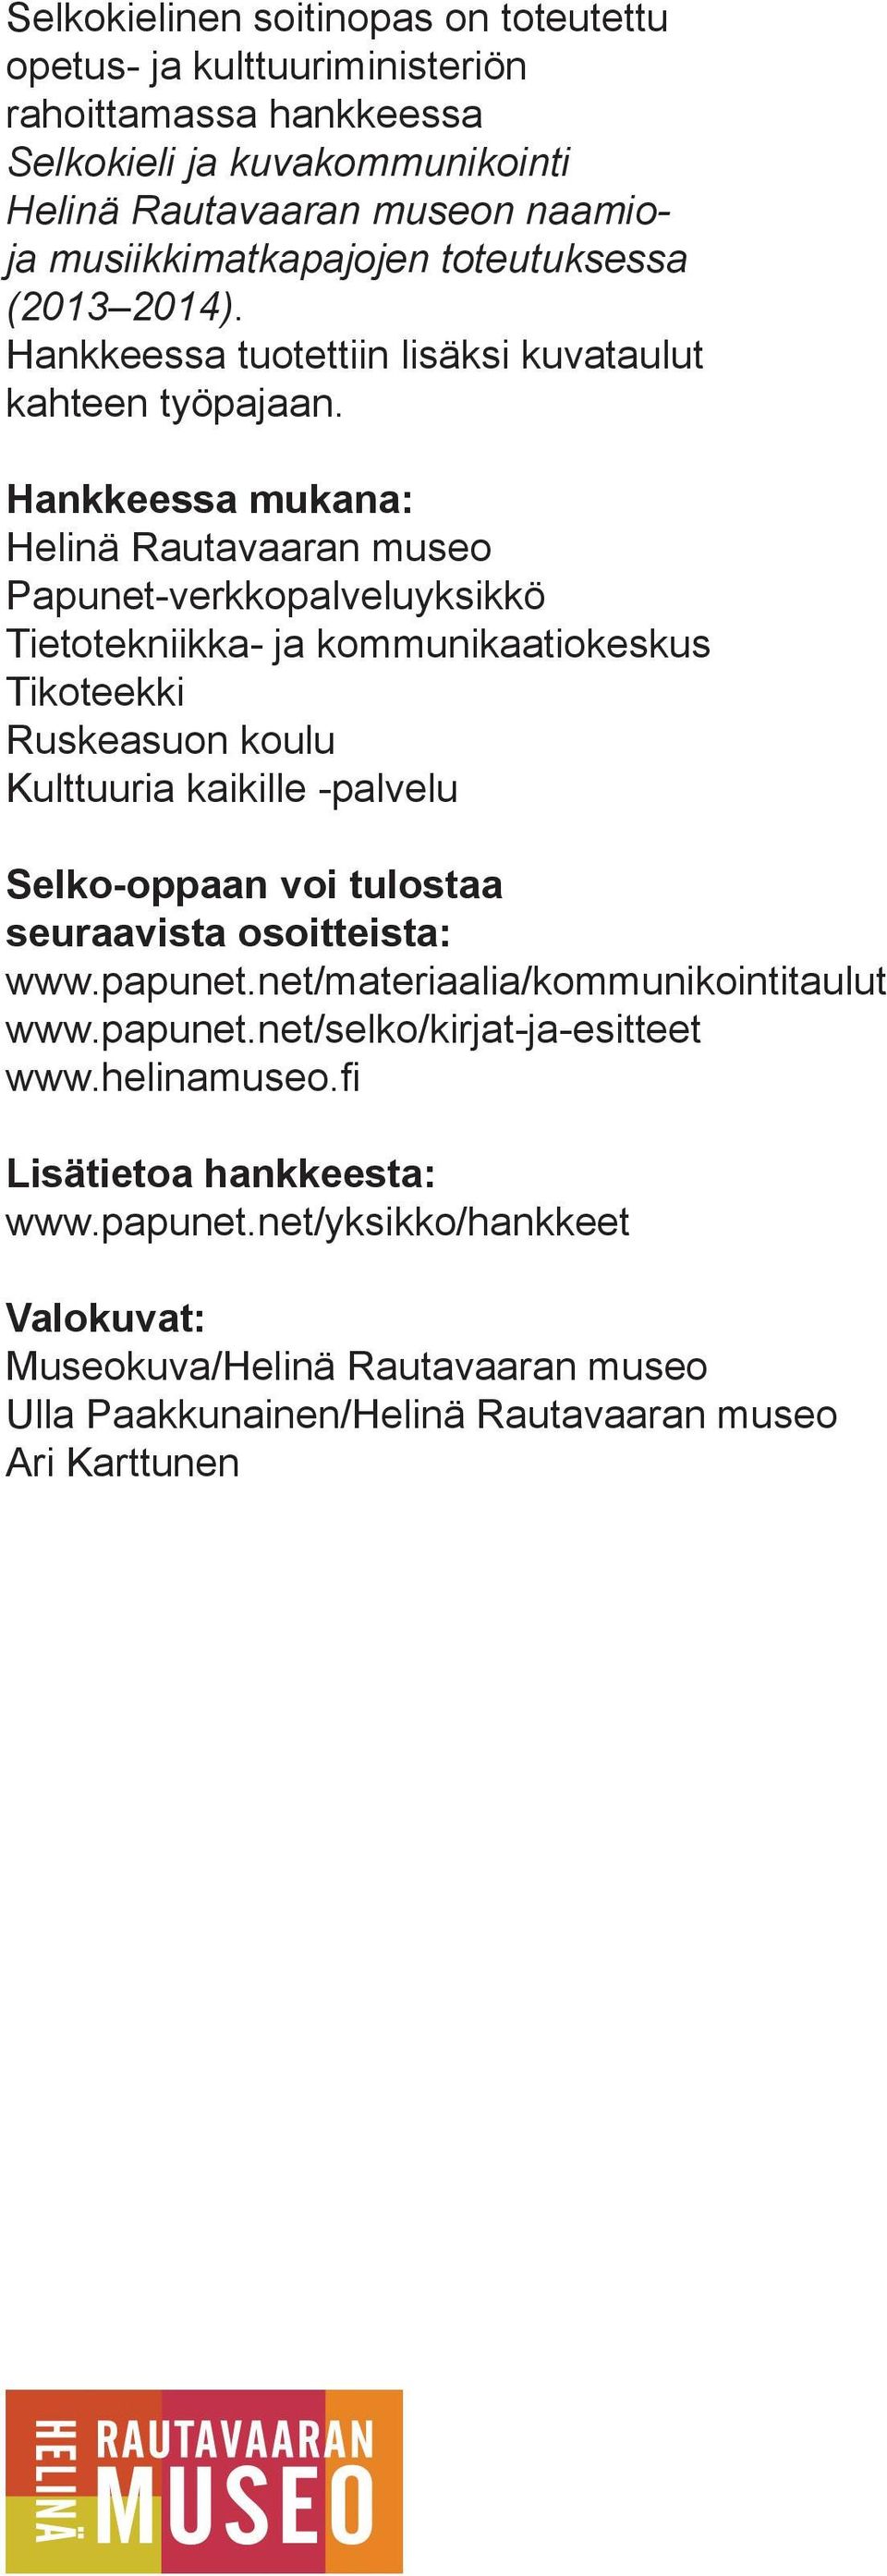 Hankkeessa mukana: Helinä Rautavaaran museo Papunet-verkkopalveluyksikkö Tietotekniikka- ja kommunikaatiokeskus Tikoteekki Ruskeasuon koulu Kulttuuria kaikille -palvelu Selko-oppaan voi